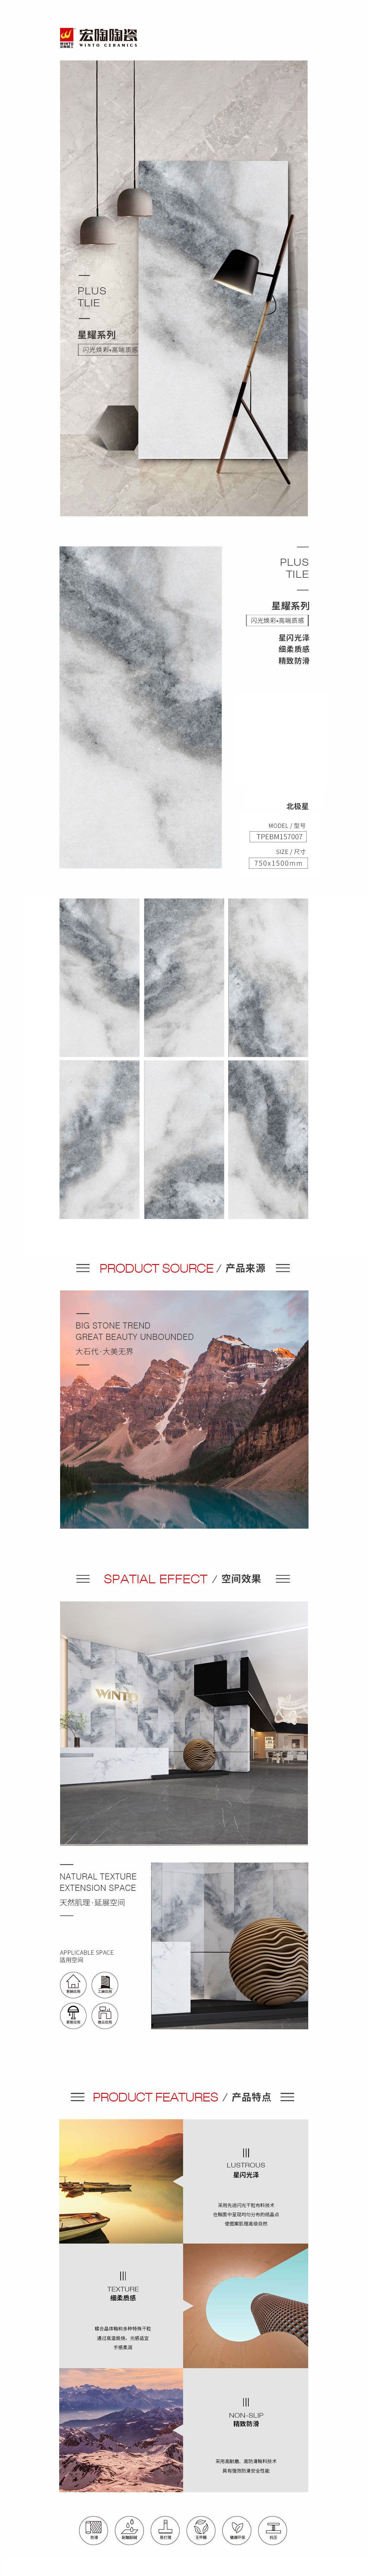 TPEBM157007北极星陶瓷大板详细介绍图片、规格、特点等，是东莞瓷砖，是拉菲9陶瓷品牌-中国陶瓷一线品牌。